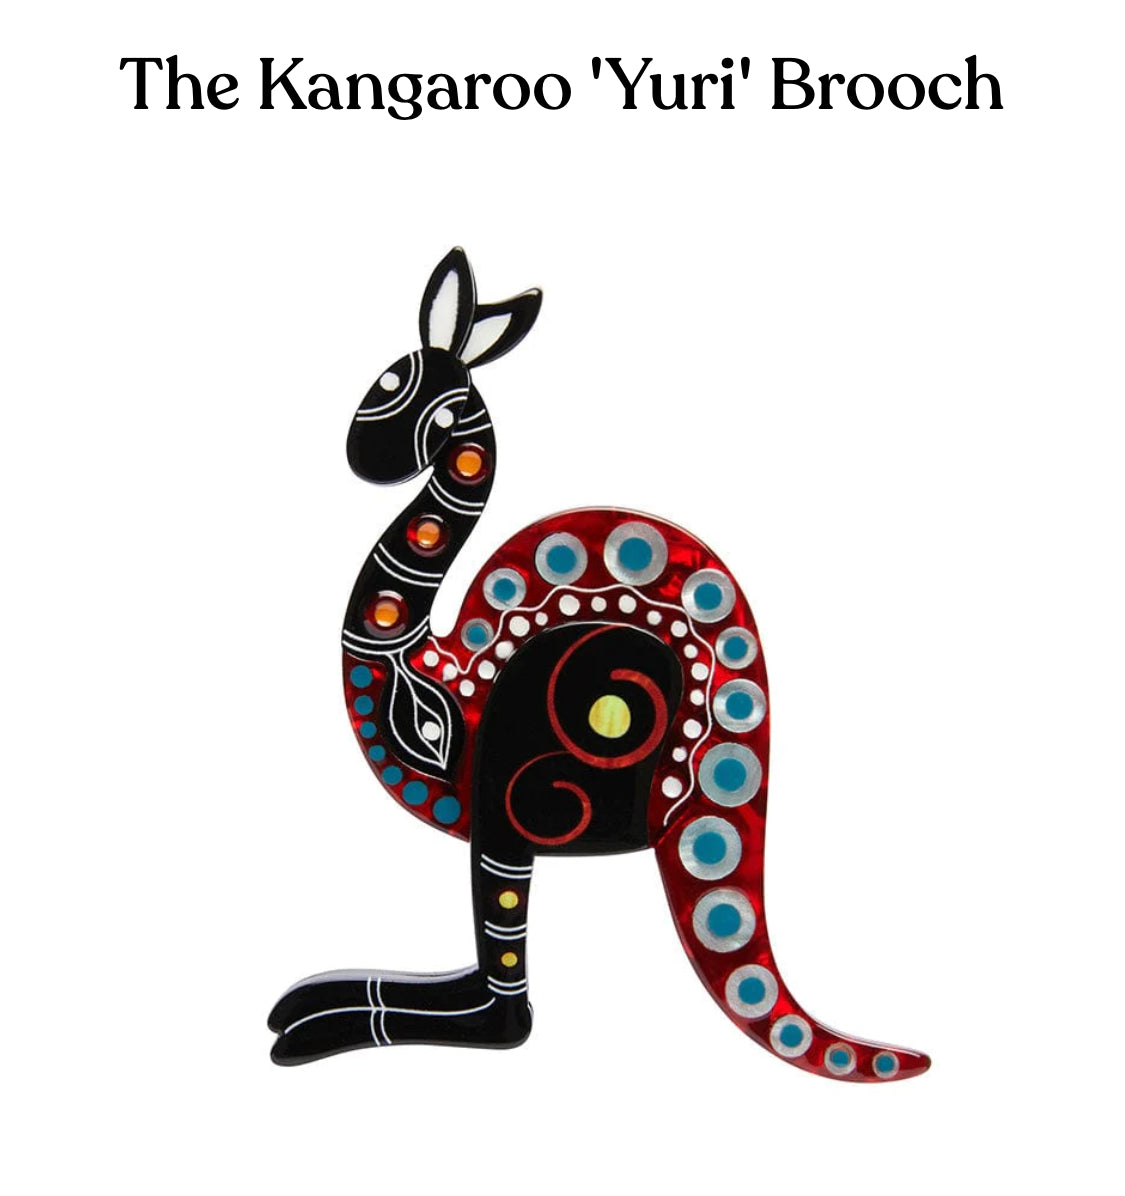 The Kangaroo 'Yuri' Brooch